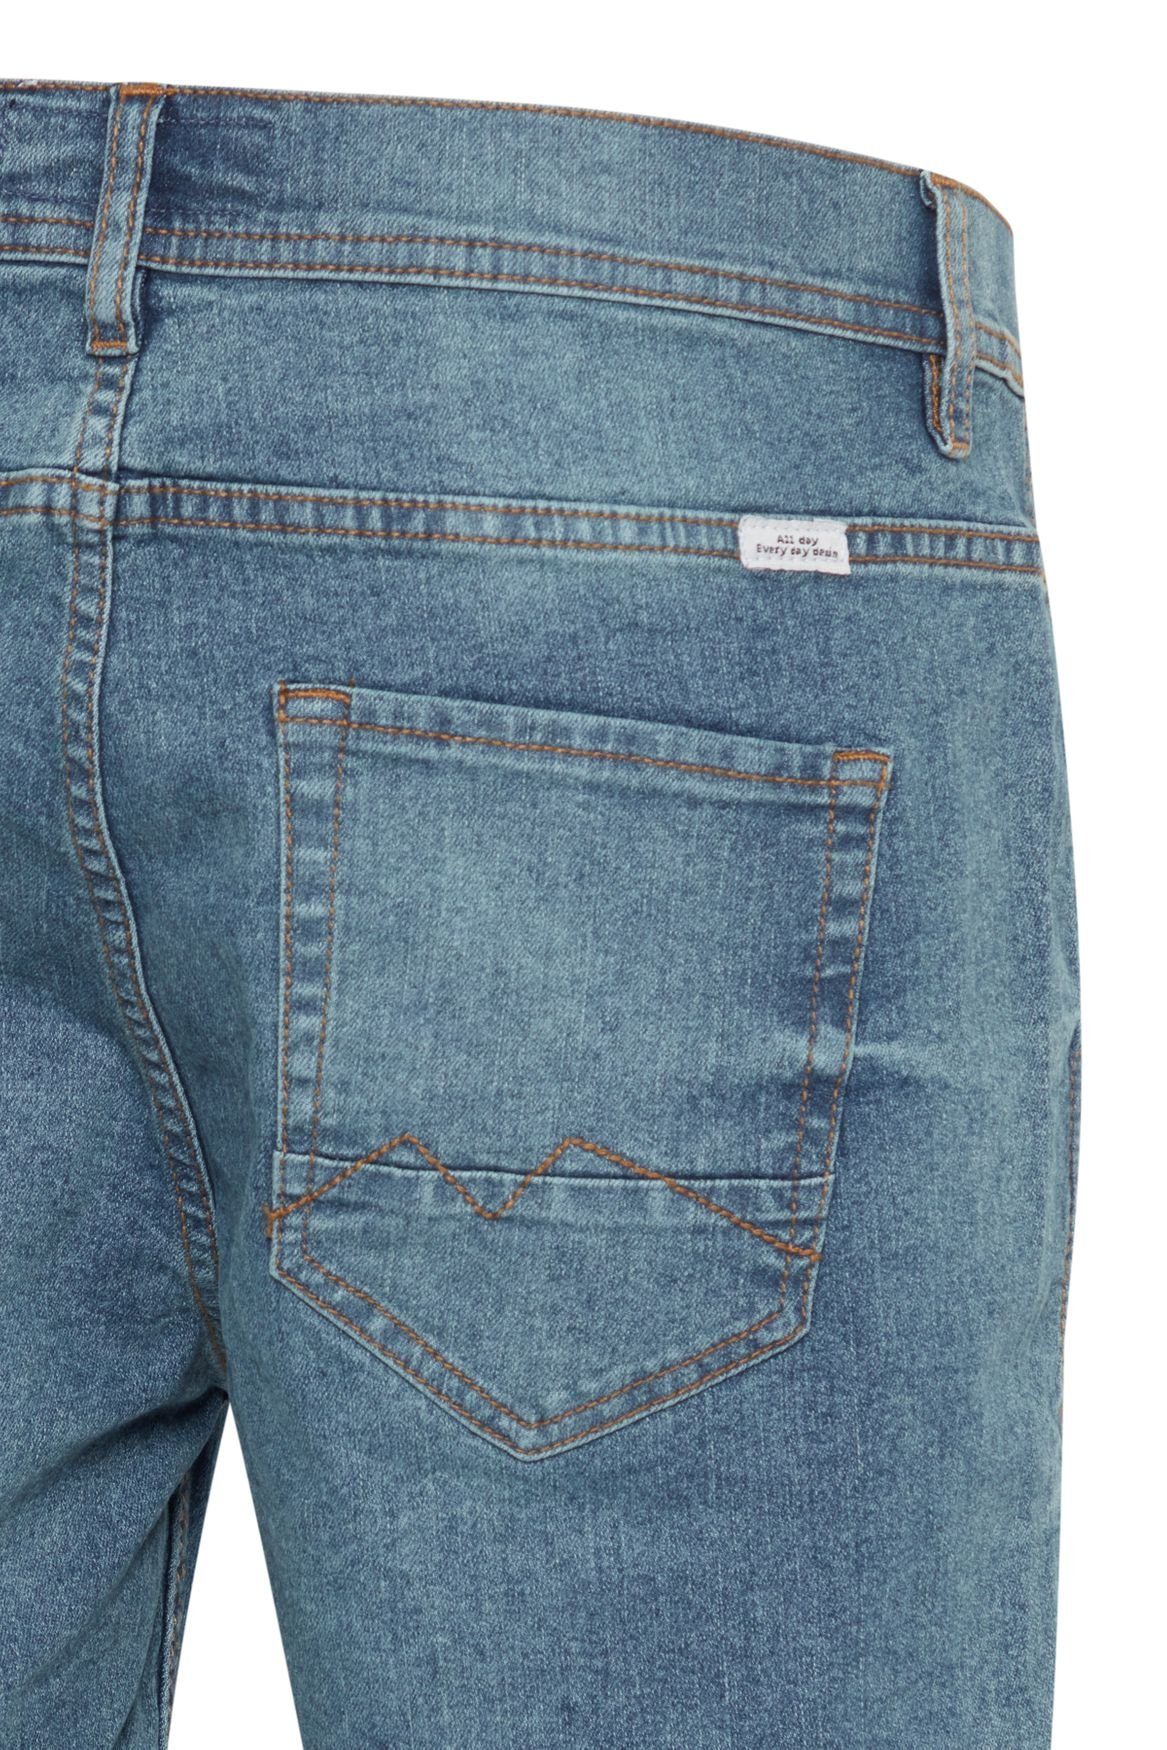 Blend Jeansshorts Denim Capri Jeans Shorts Bermuda Hose Blau 3/4 in 5087